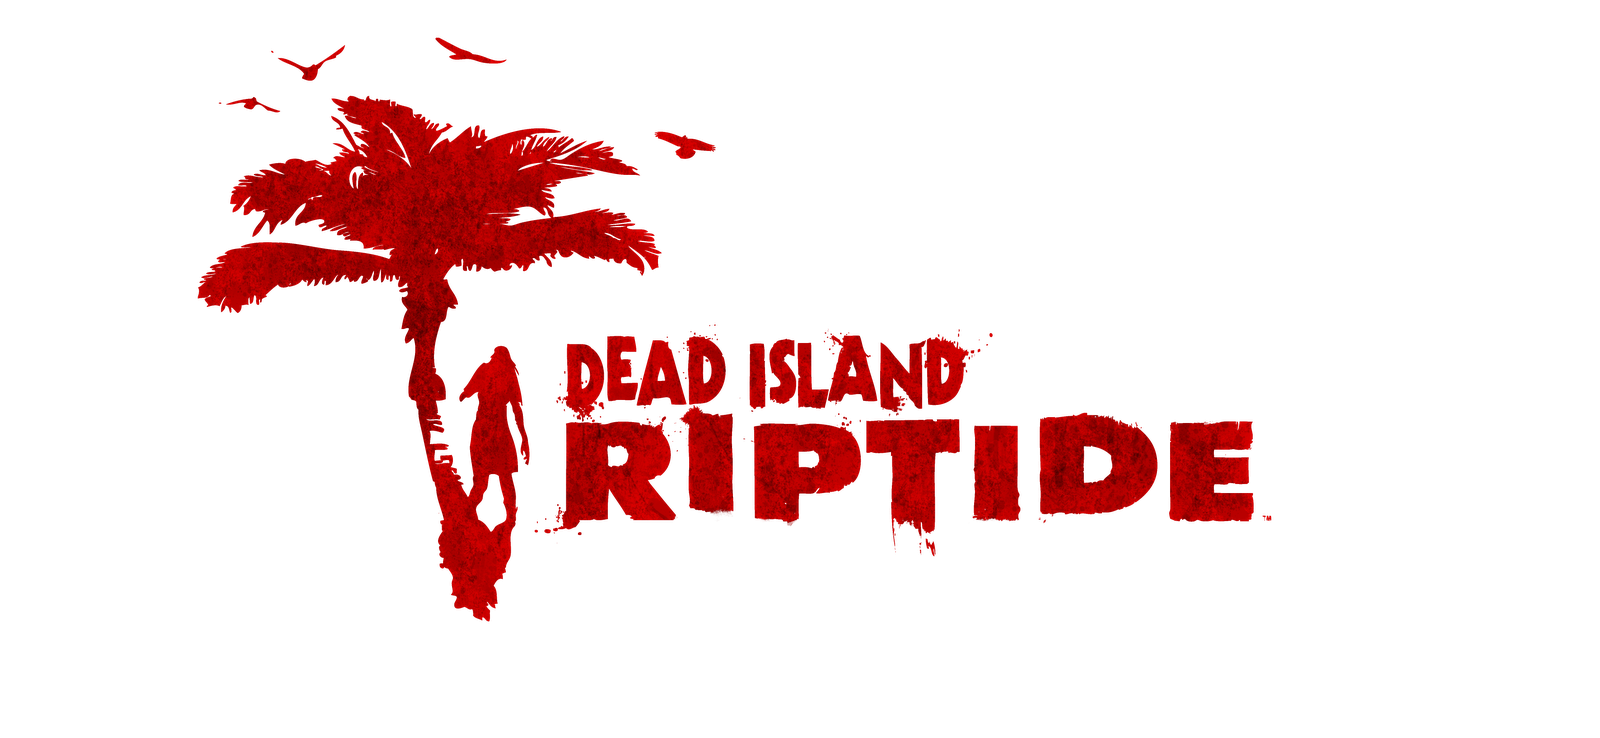 Dad Island ripyide. Dead island reptide